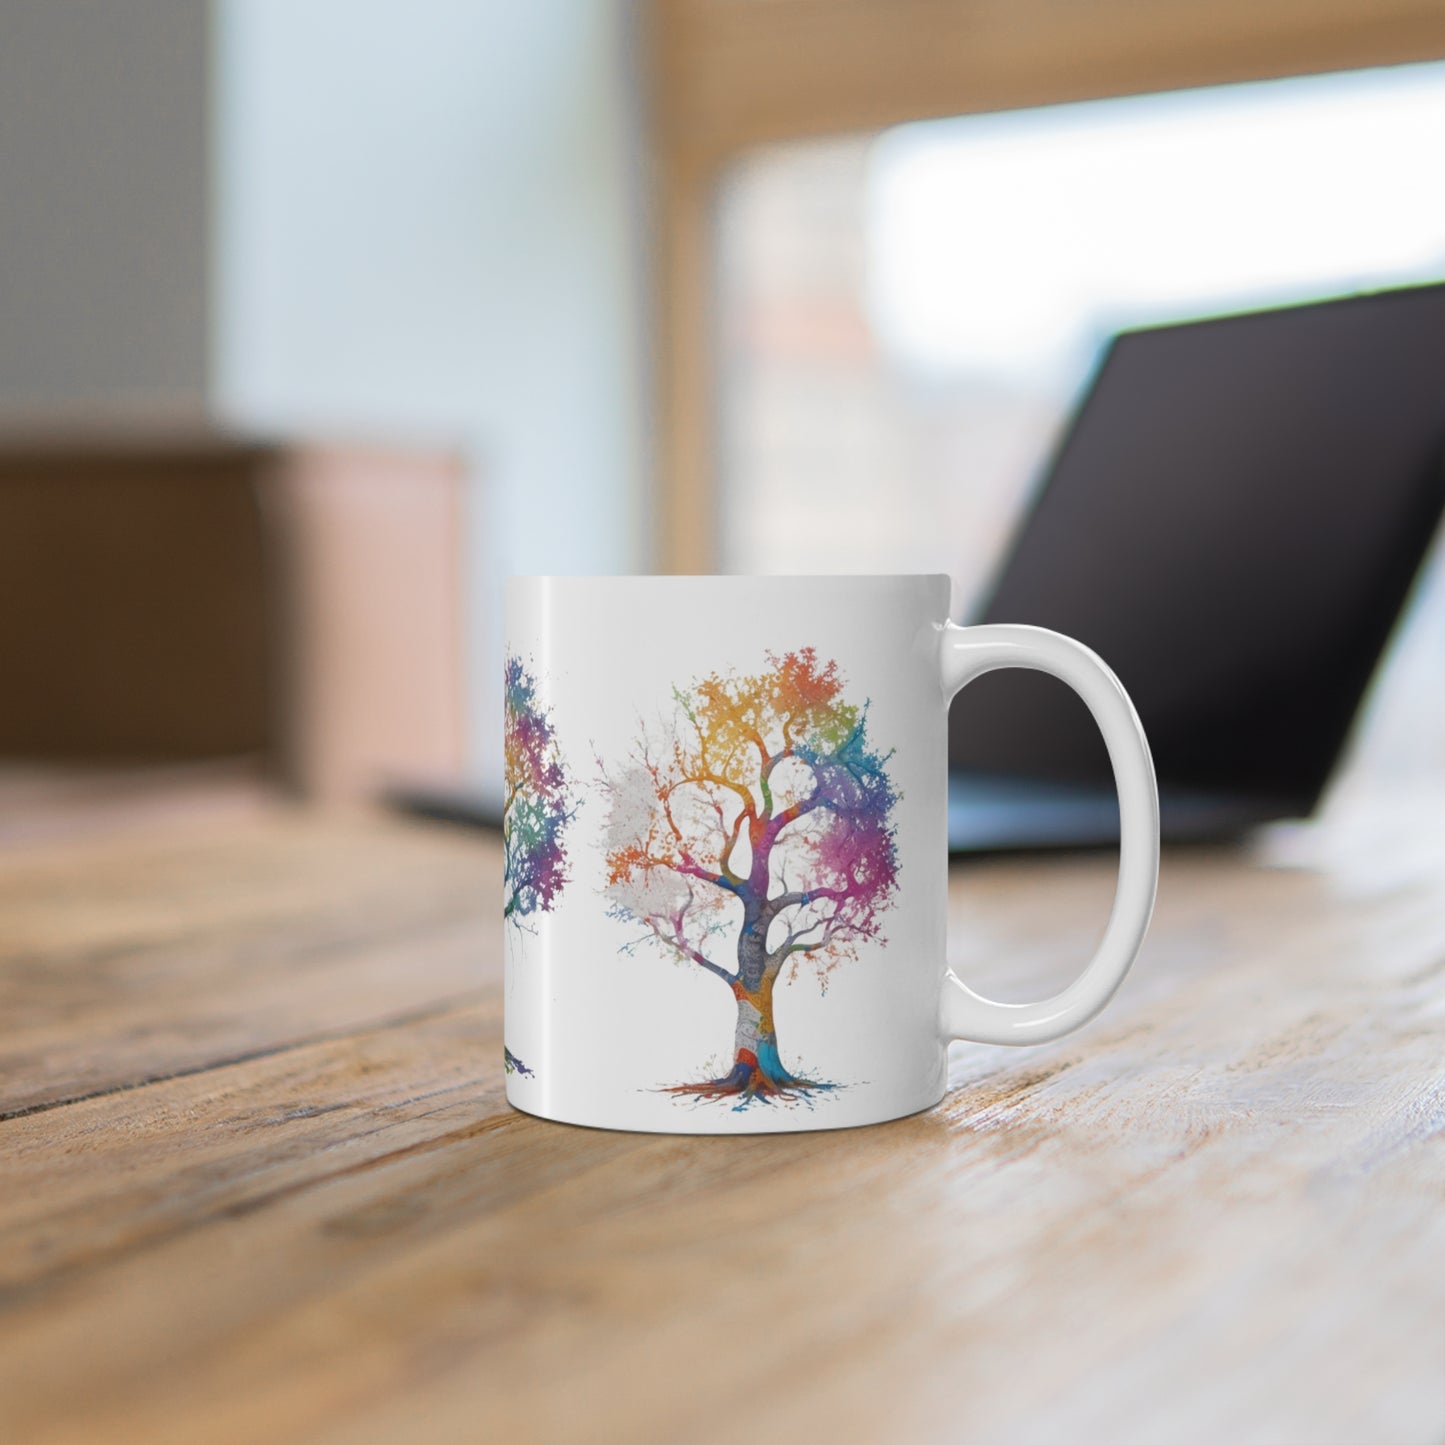 Colourful Messy Painted Trees Mug - Ceramic Coffee Mug 11oz